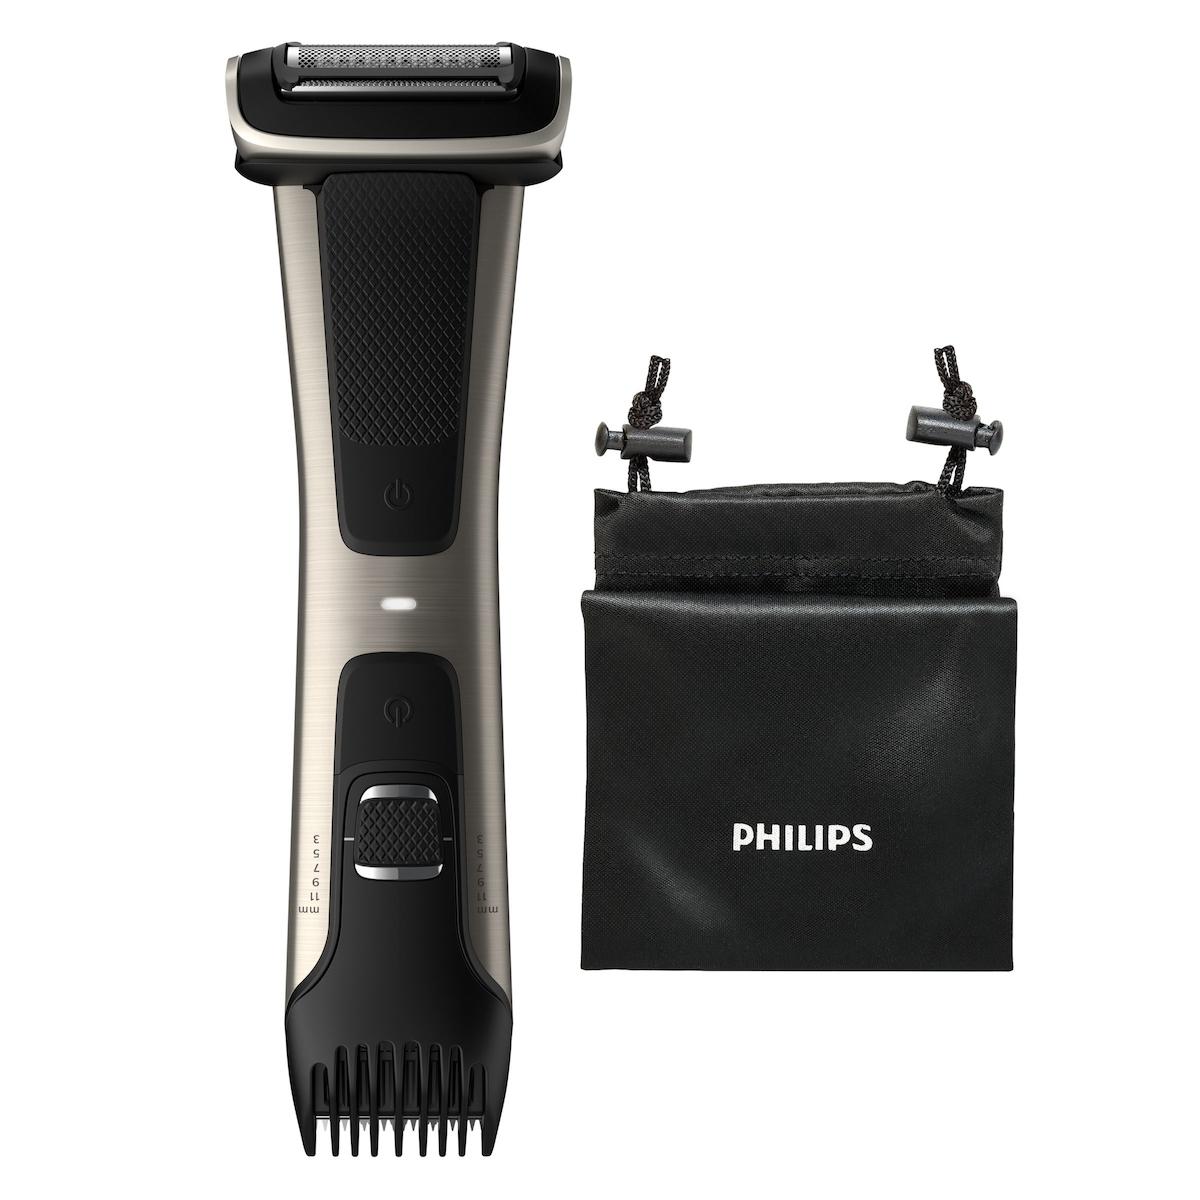 Philips BG7025/15 series 7000 Showerproof body groomer